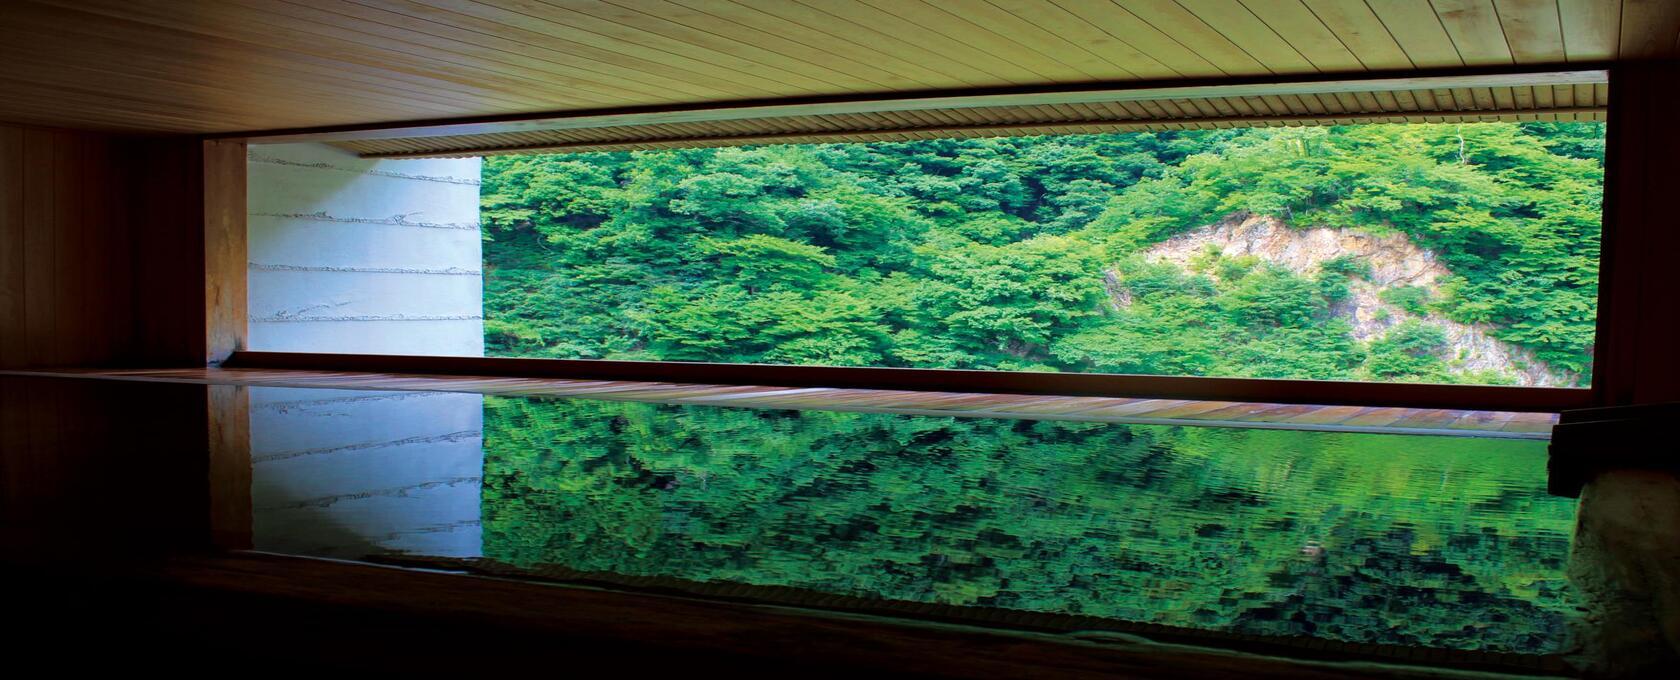 名湯と絶景が心を癒し、山海の幸に満たされる「富山の温泉」-1